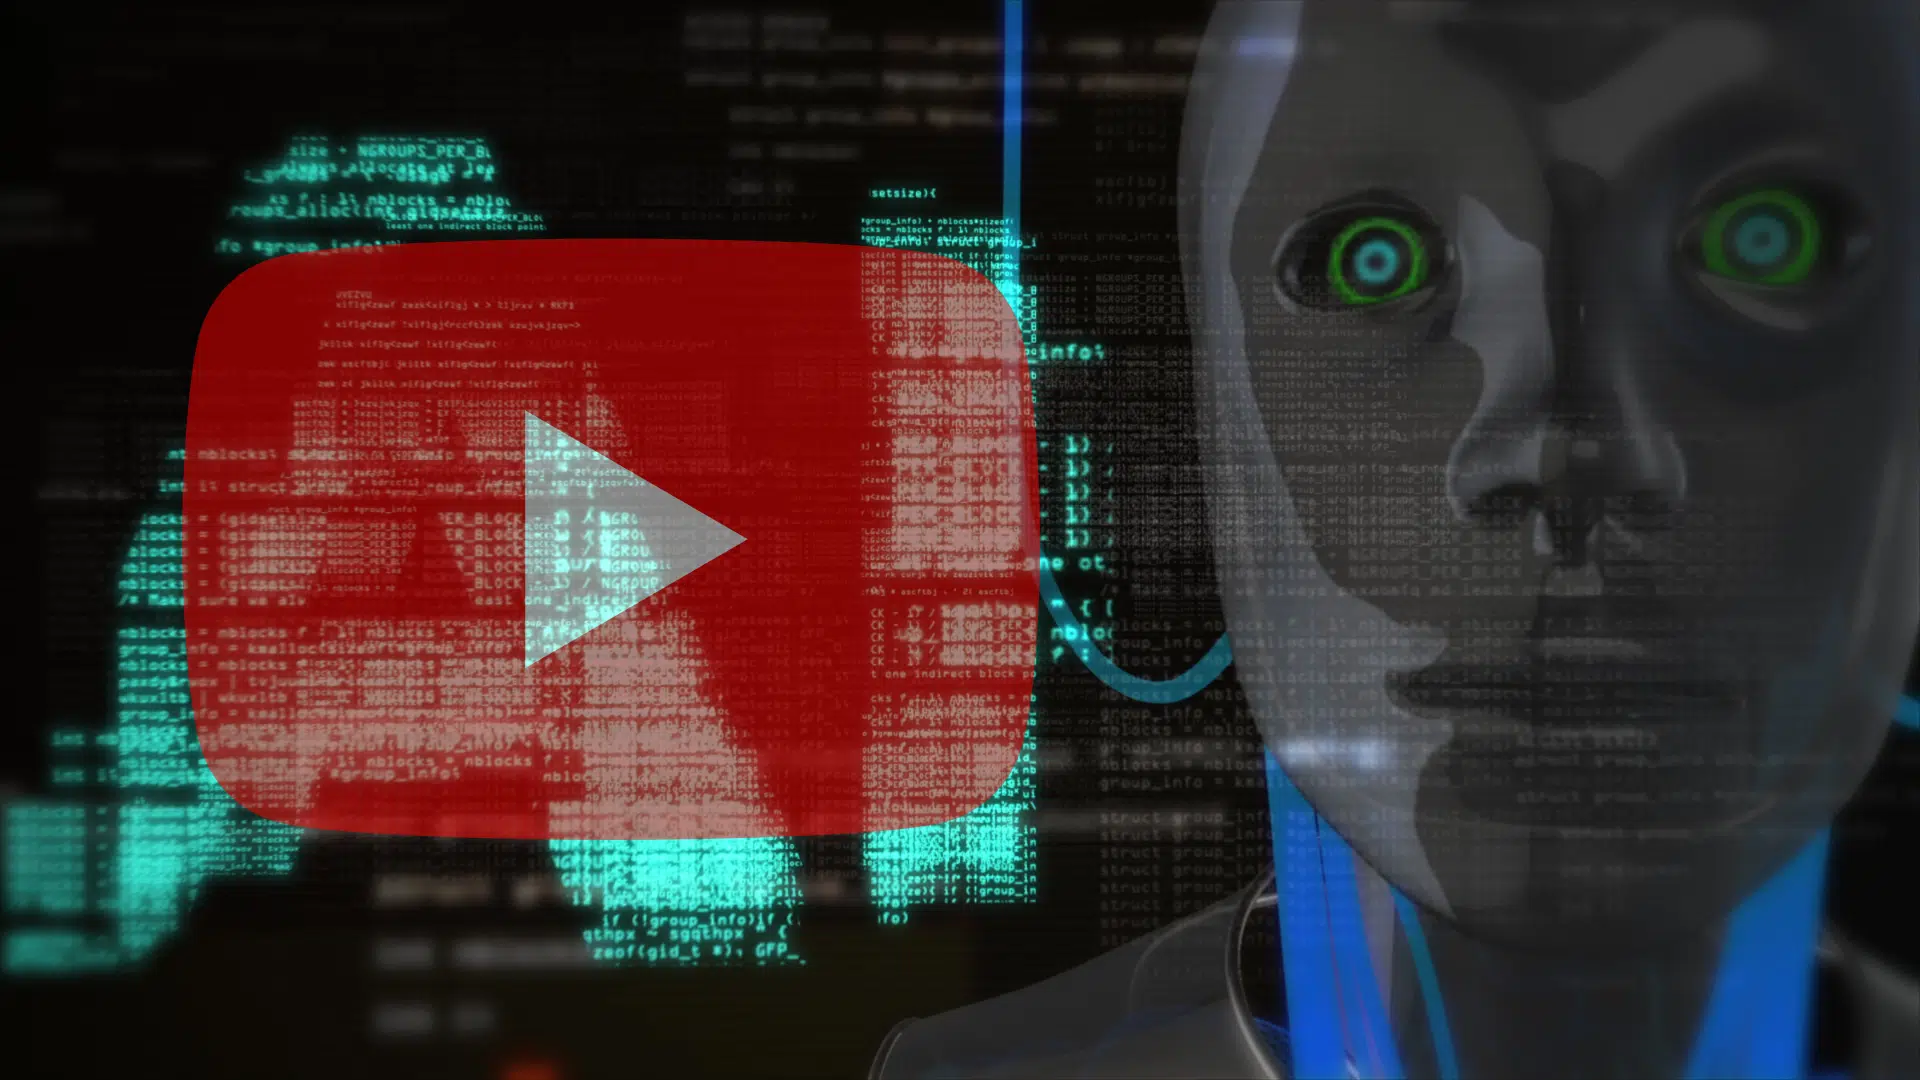 YouTube AI videos spread malware